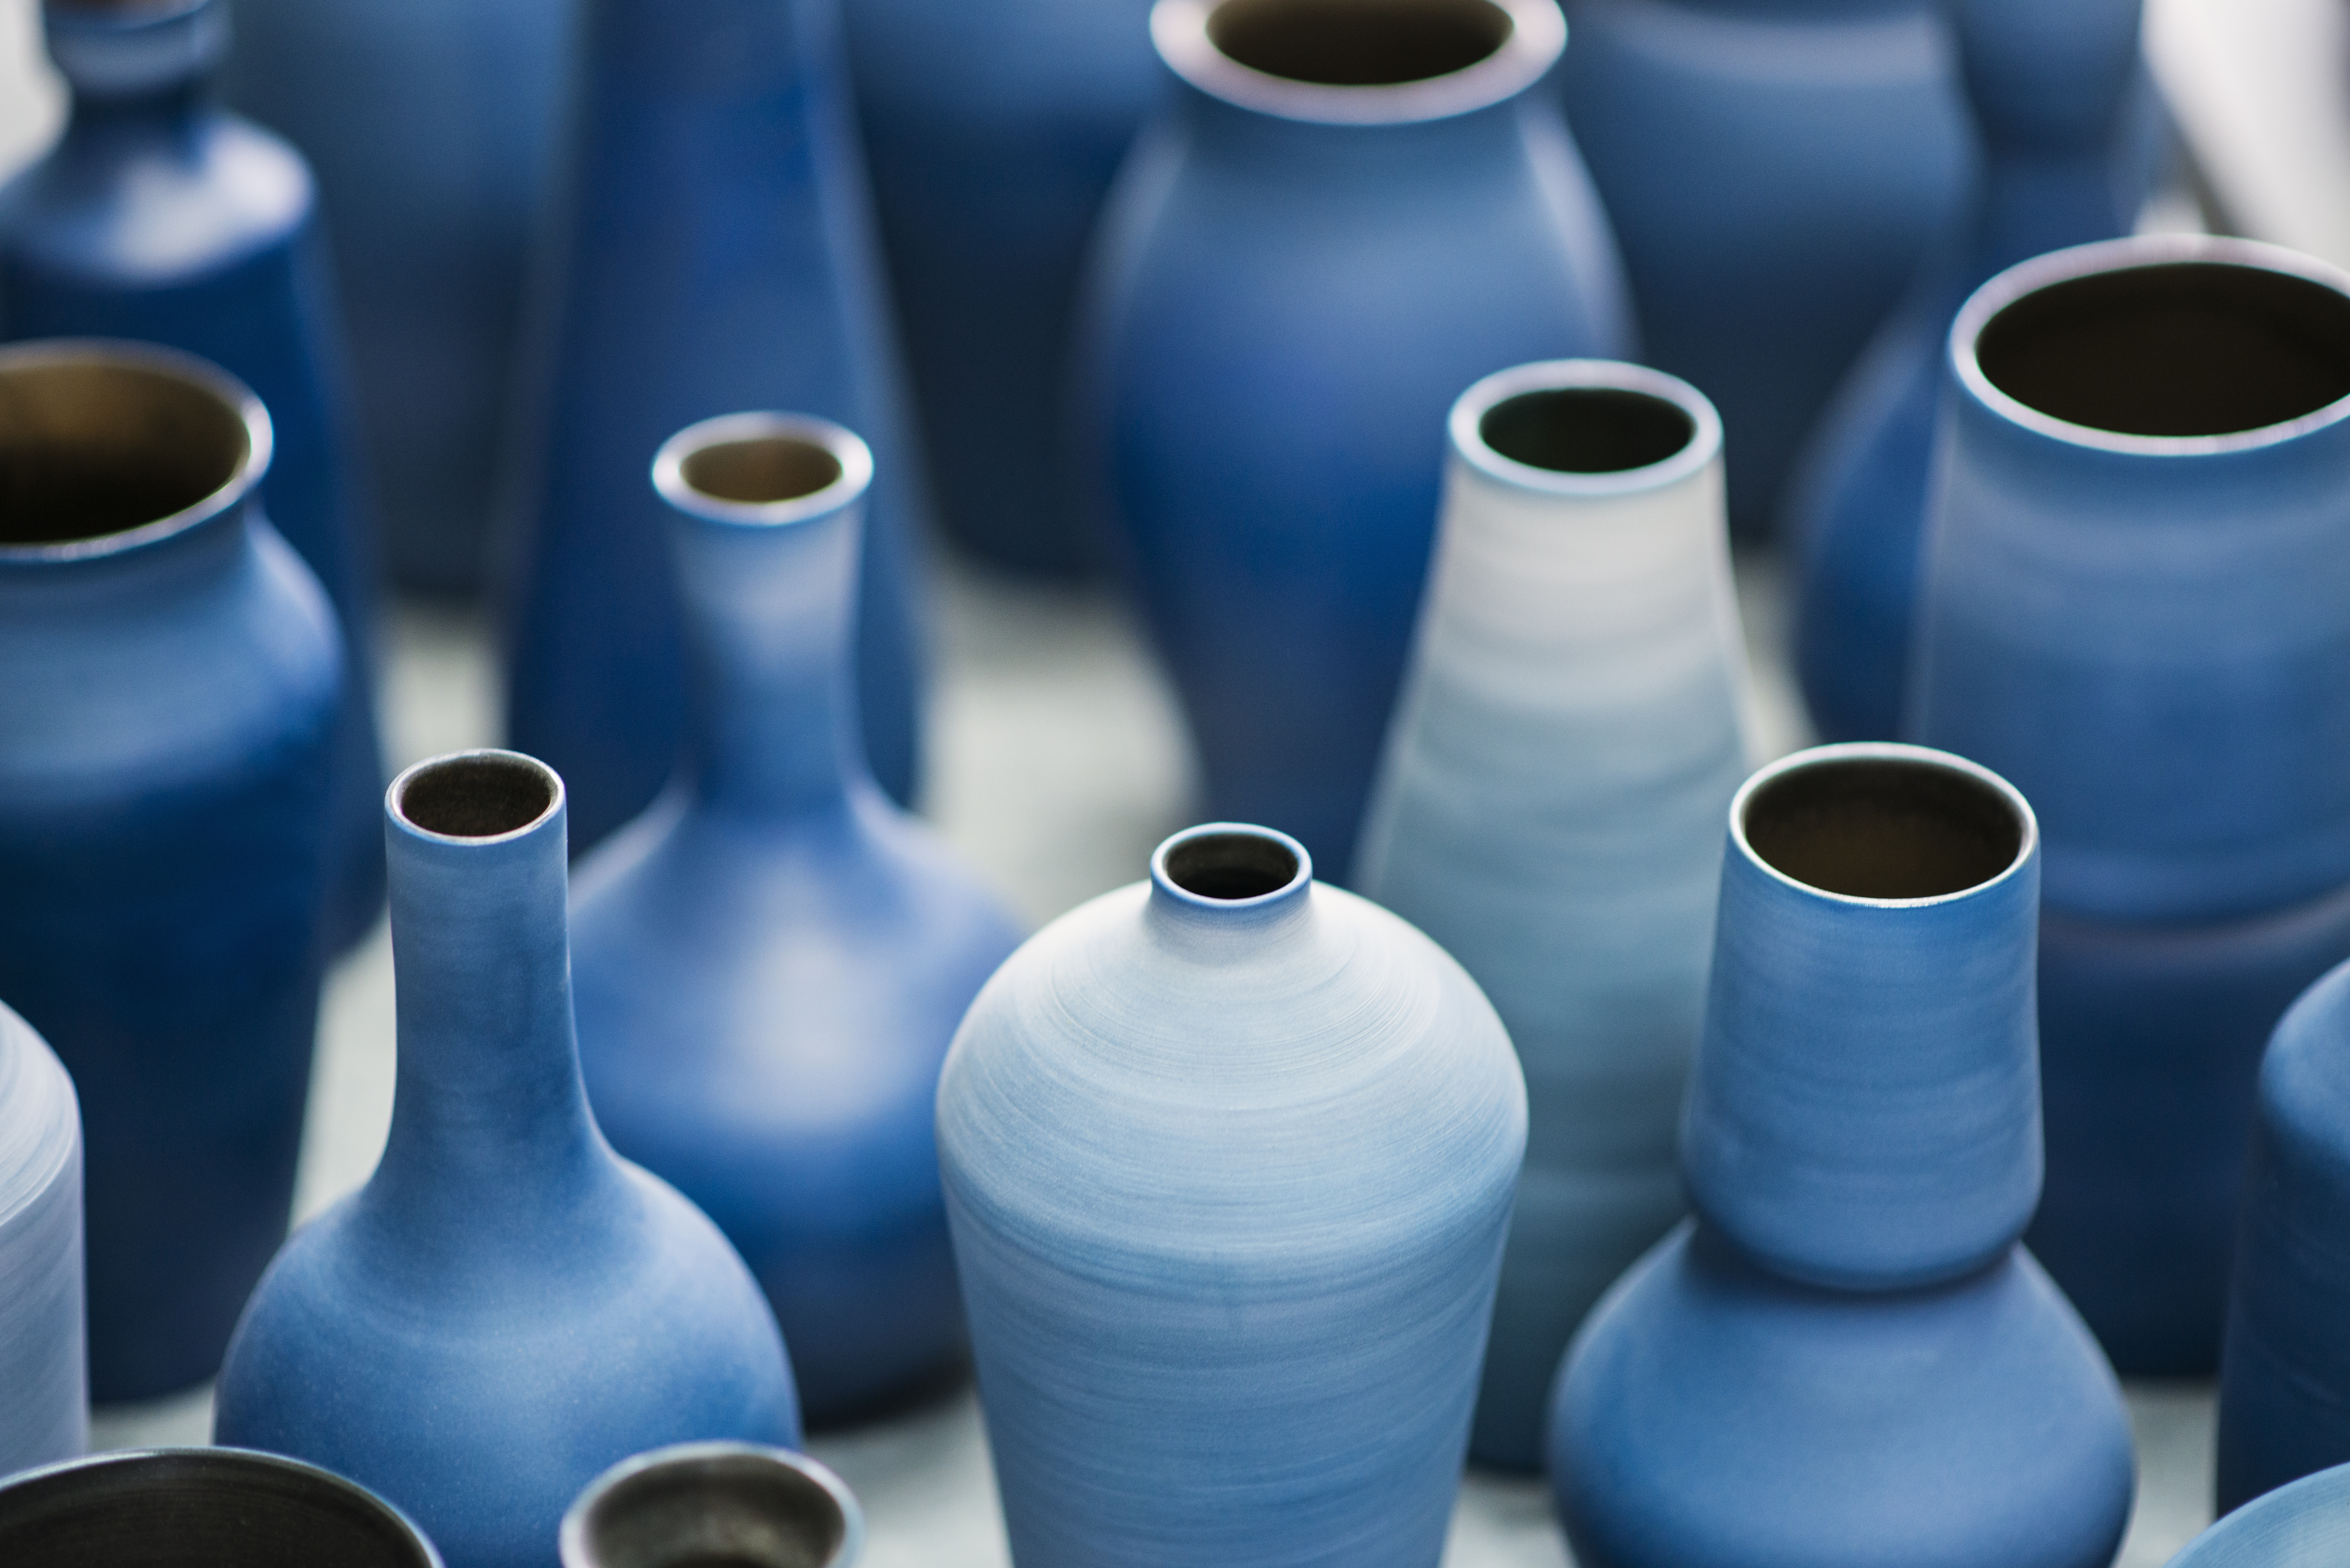 Multiple ceramic vases